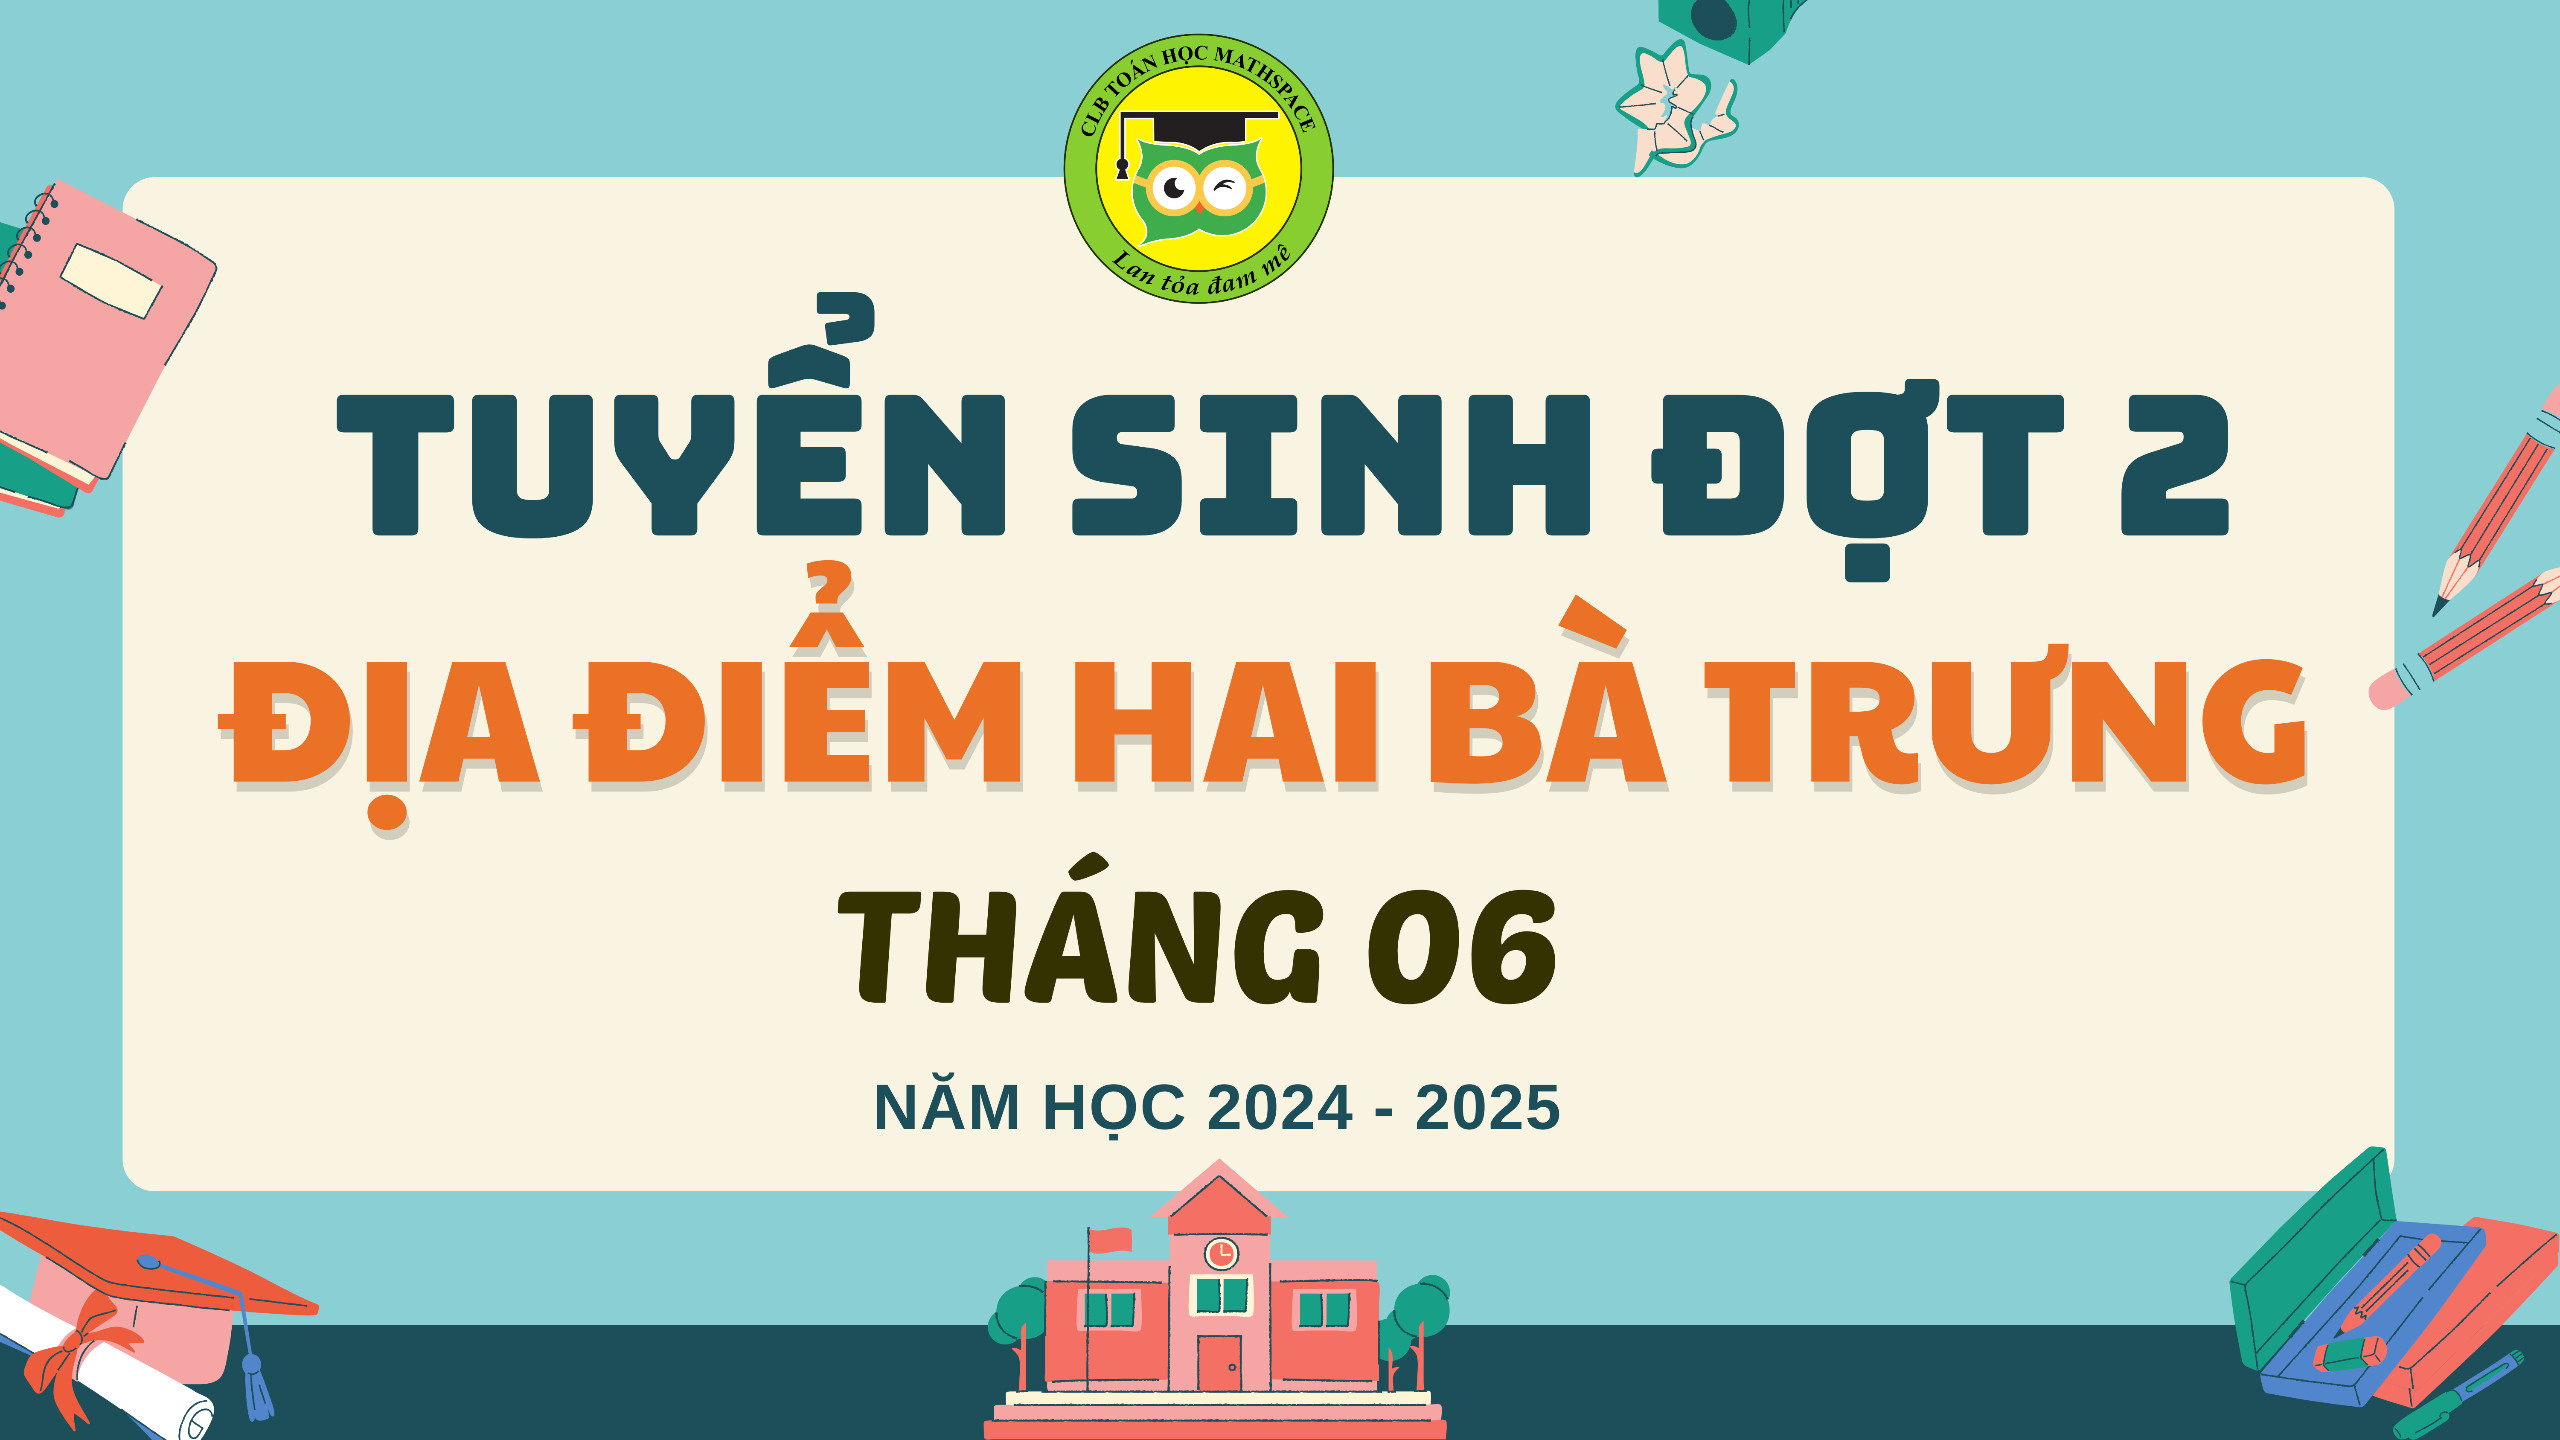 ĐỊA ĐIỂM HAI BÀ TRƯNG - TUYỂN SINH NĂM HỌC 2024 - 2025 ĐỢT 2